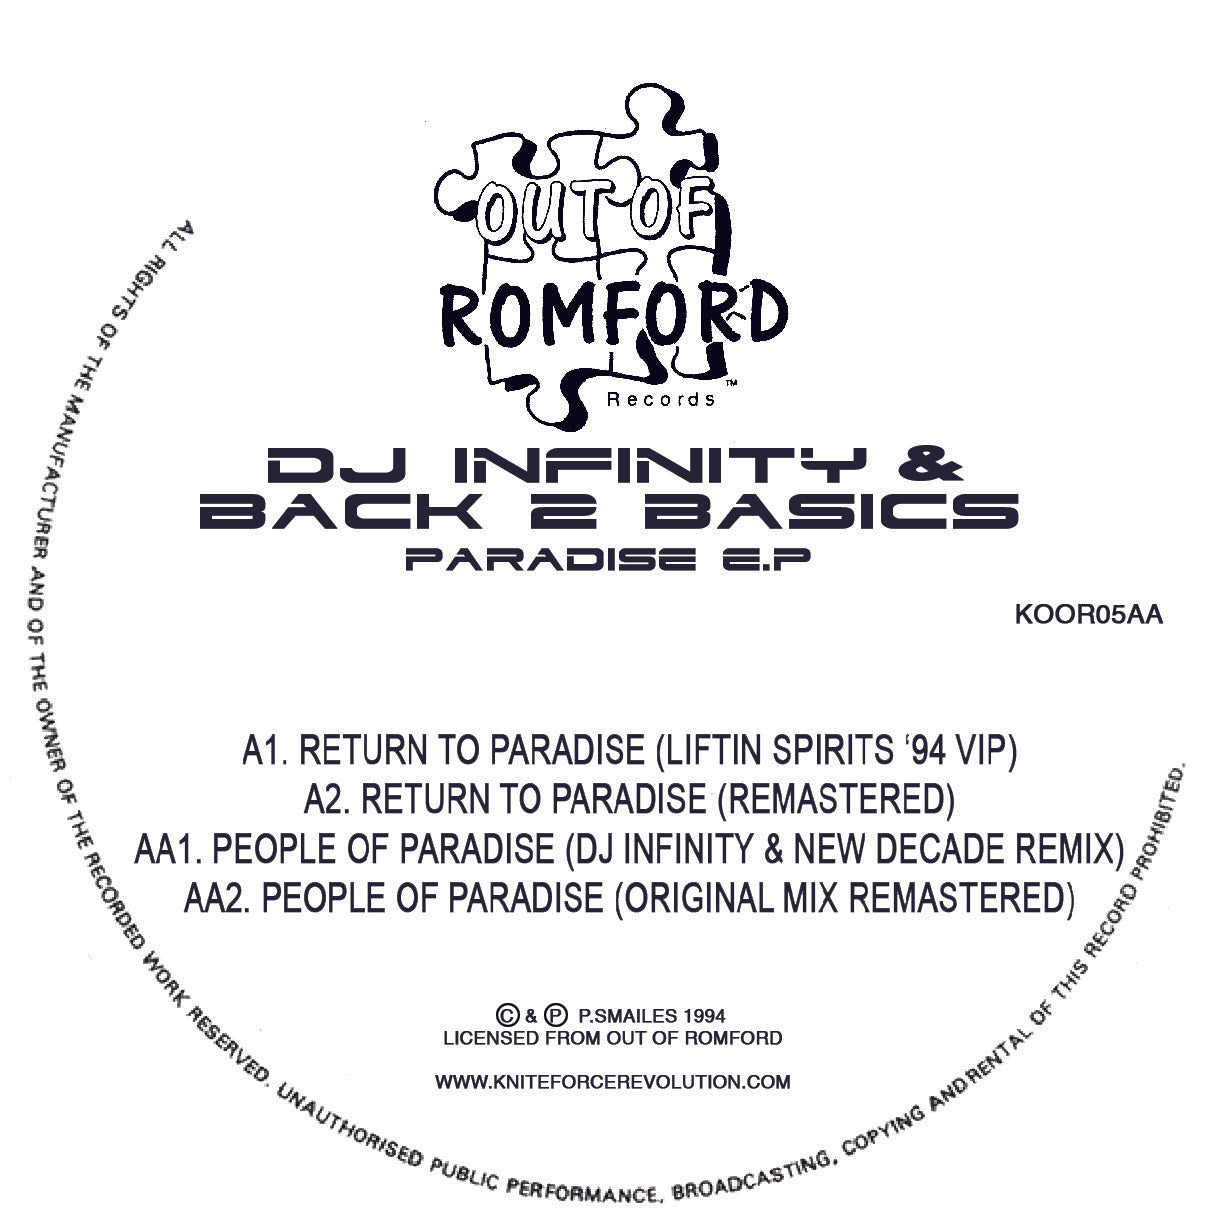 DJ INFINITY & BACK 2 BASICS 'PARADISE EP' 12" (REISSUE)